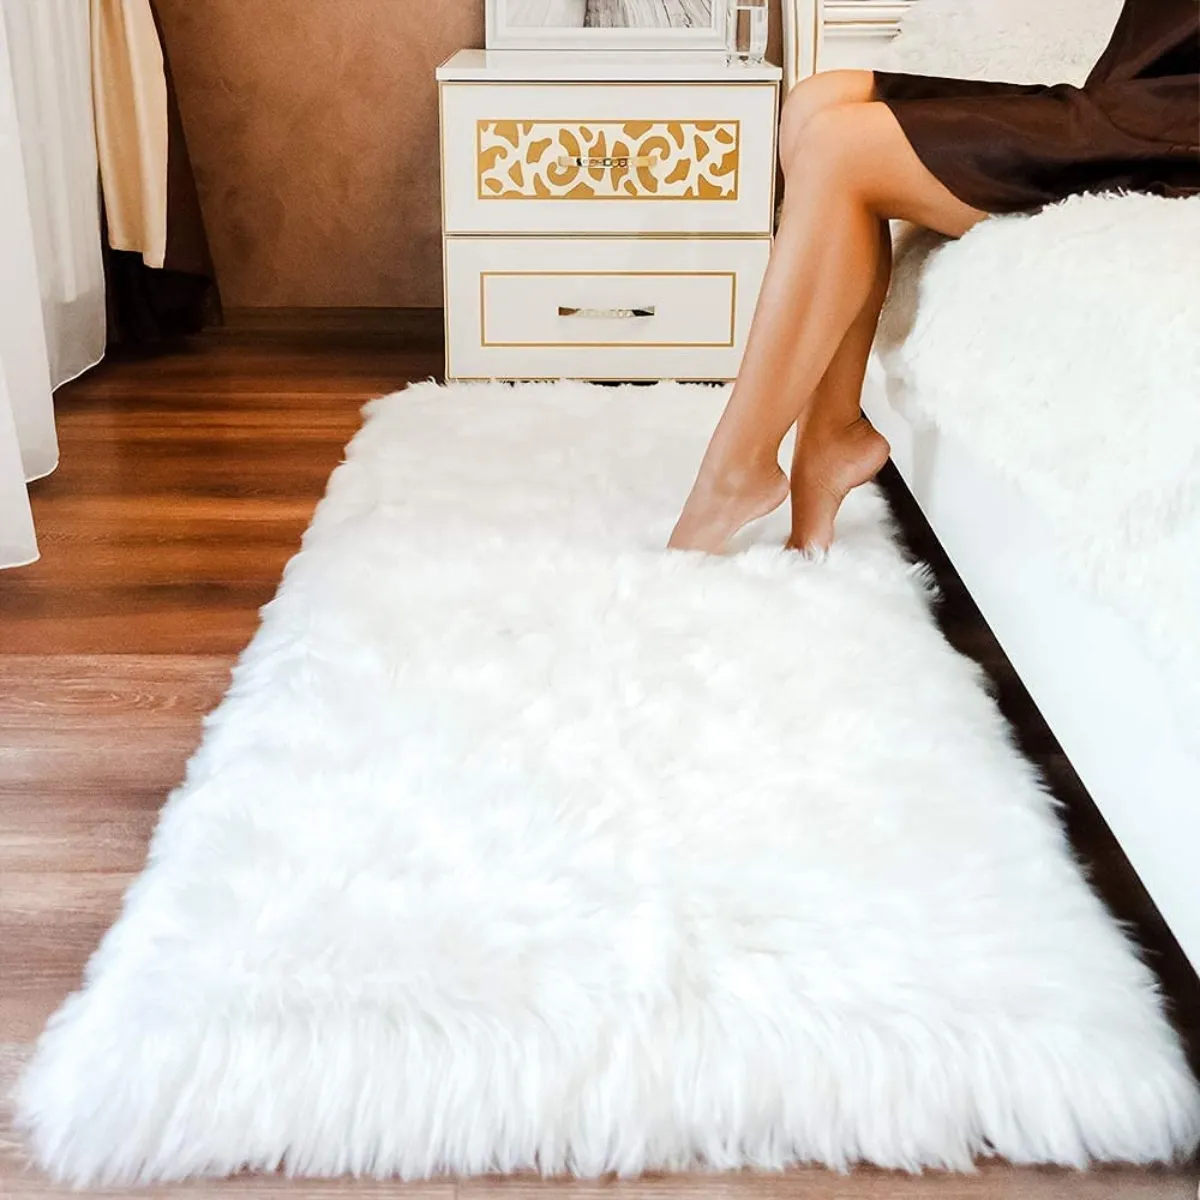 kann man teppiche selber reinigen und wie im haushalt